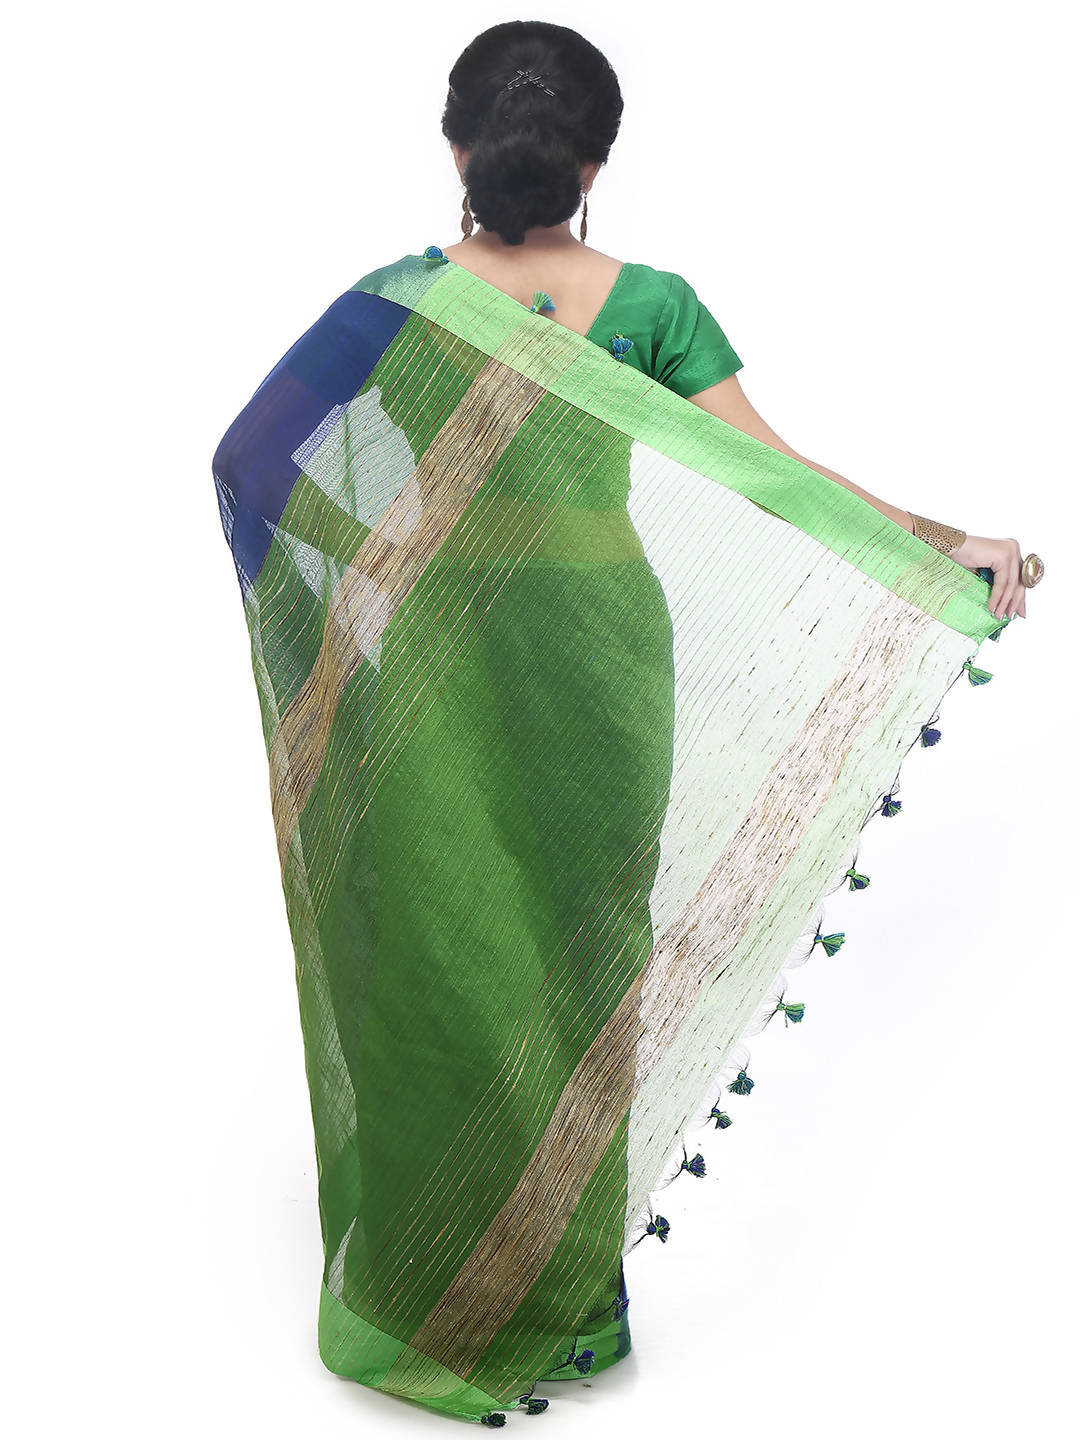 Blue green bengal handloom cotton blend saree